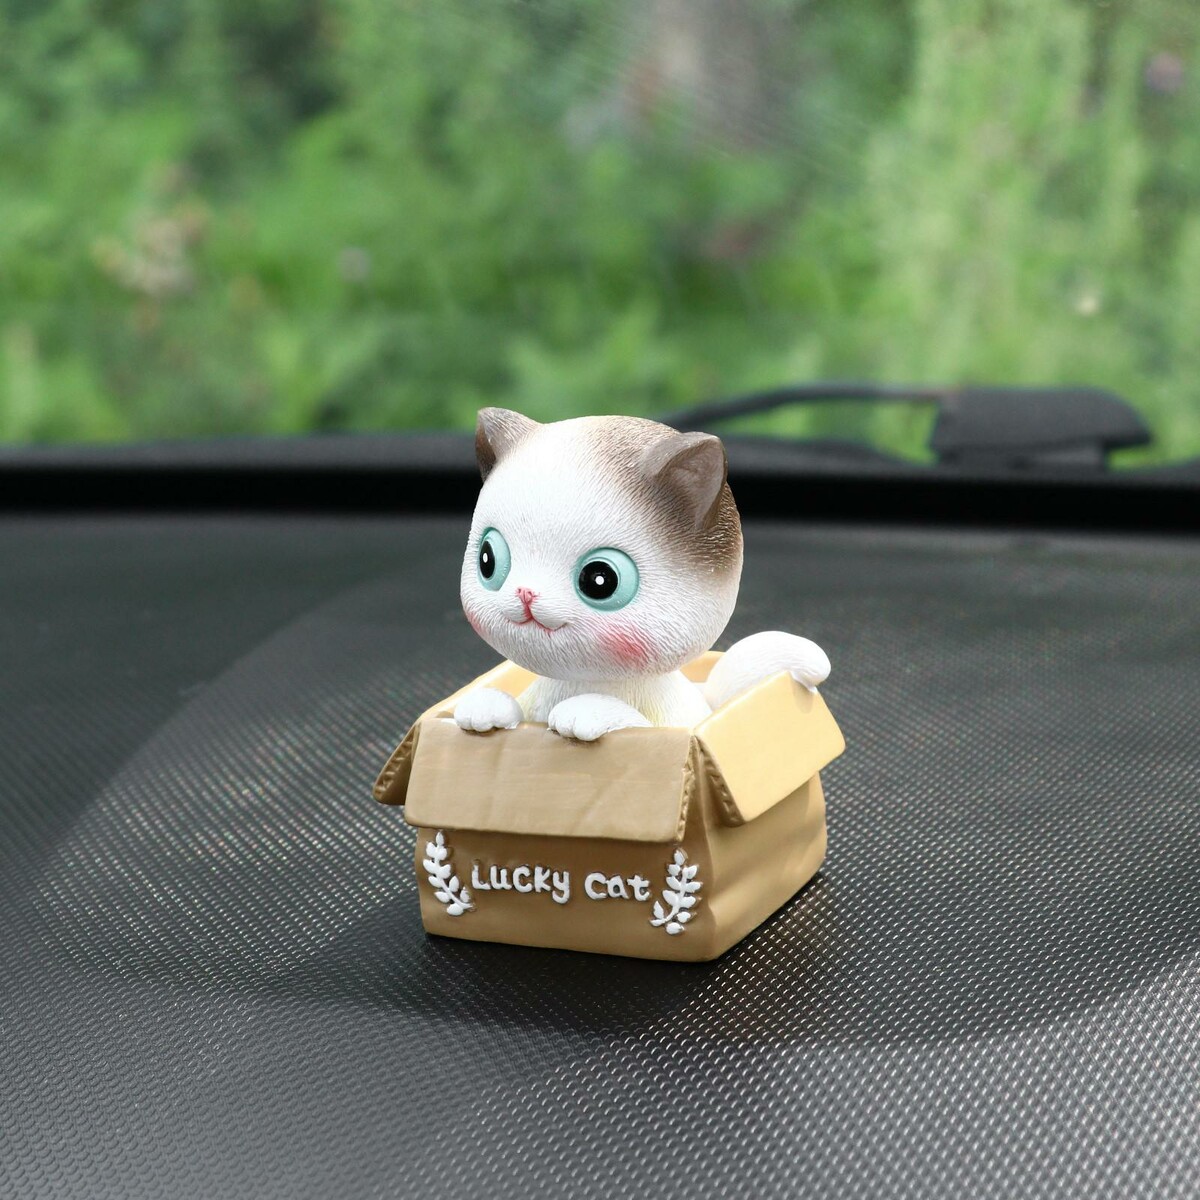 Счастливый кот на панель авто, качающий головой, сп23 счастливый остров иллюстрации марит торнквист